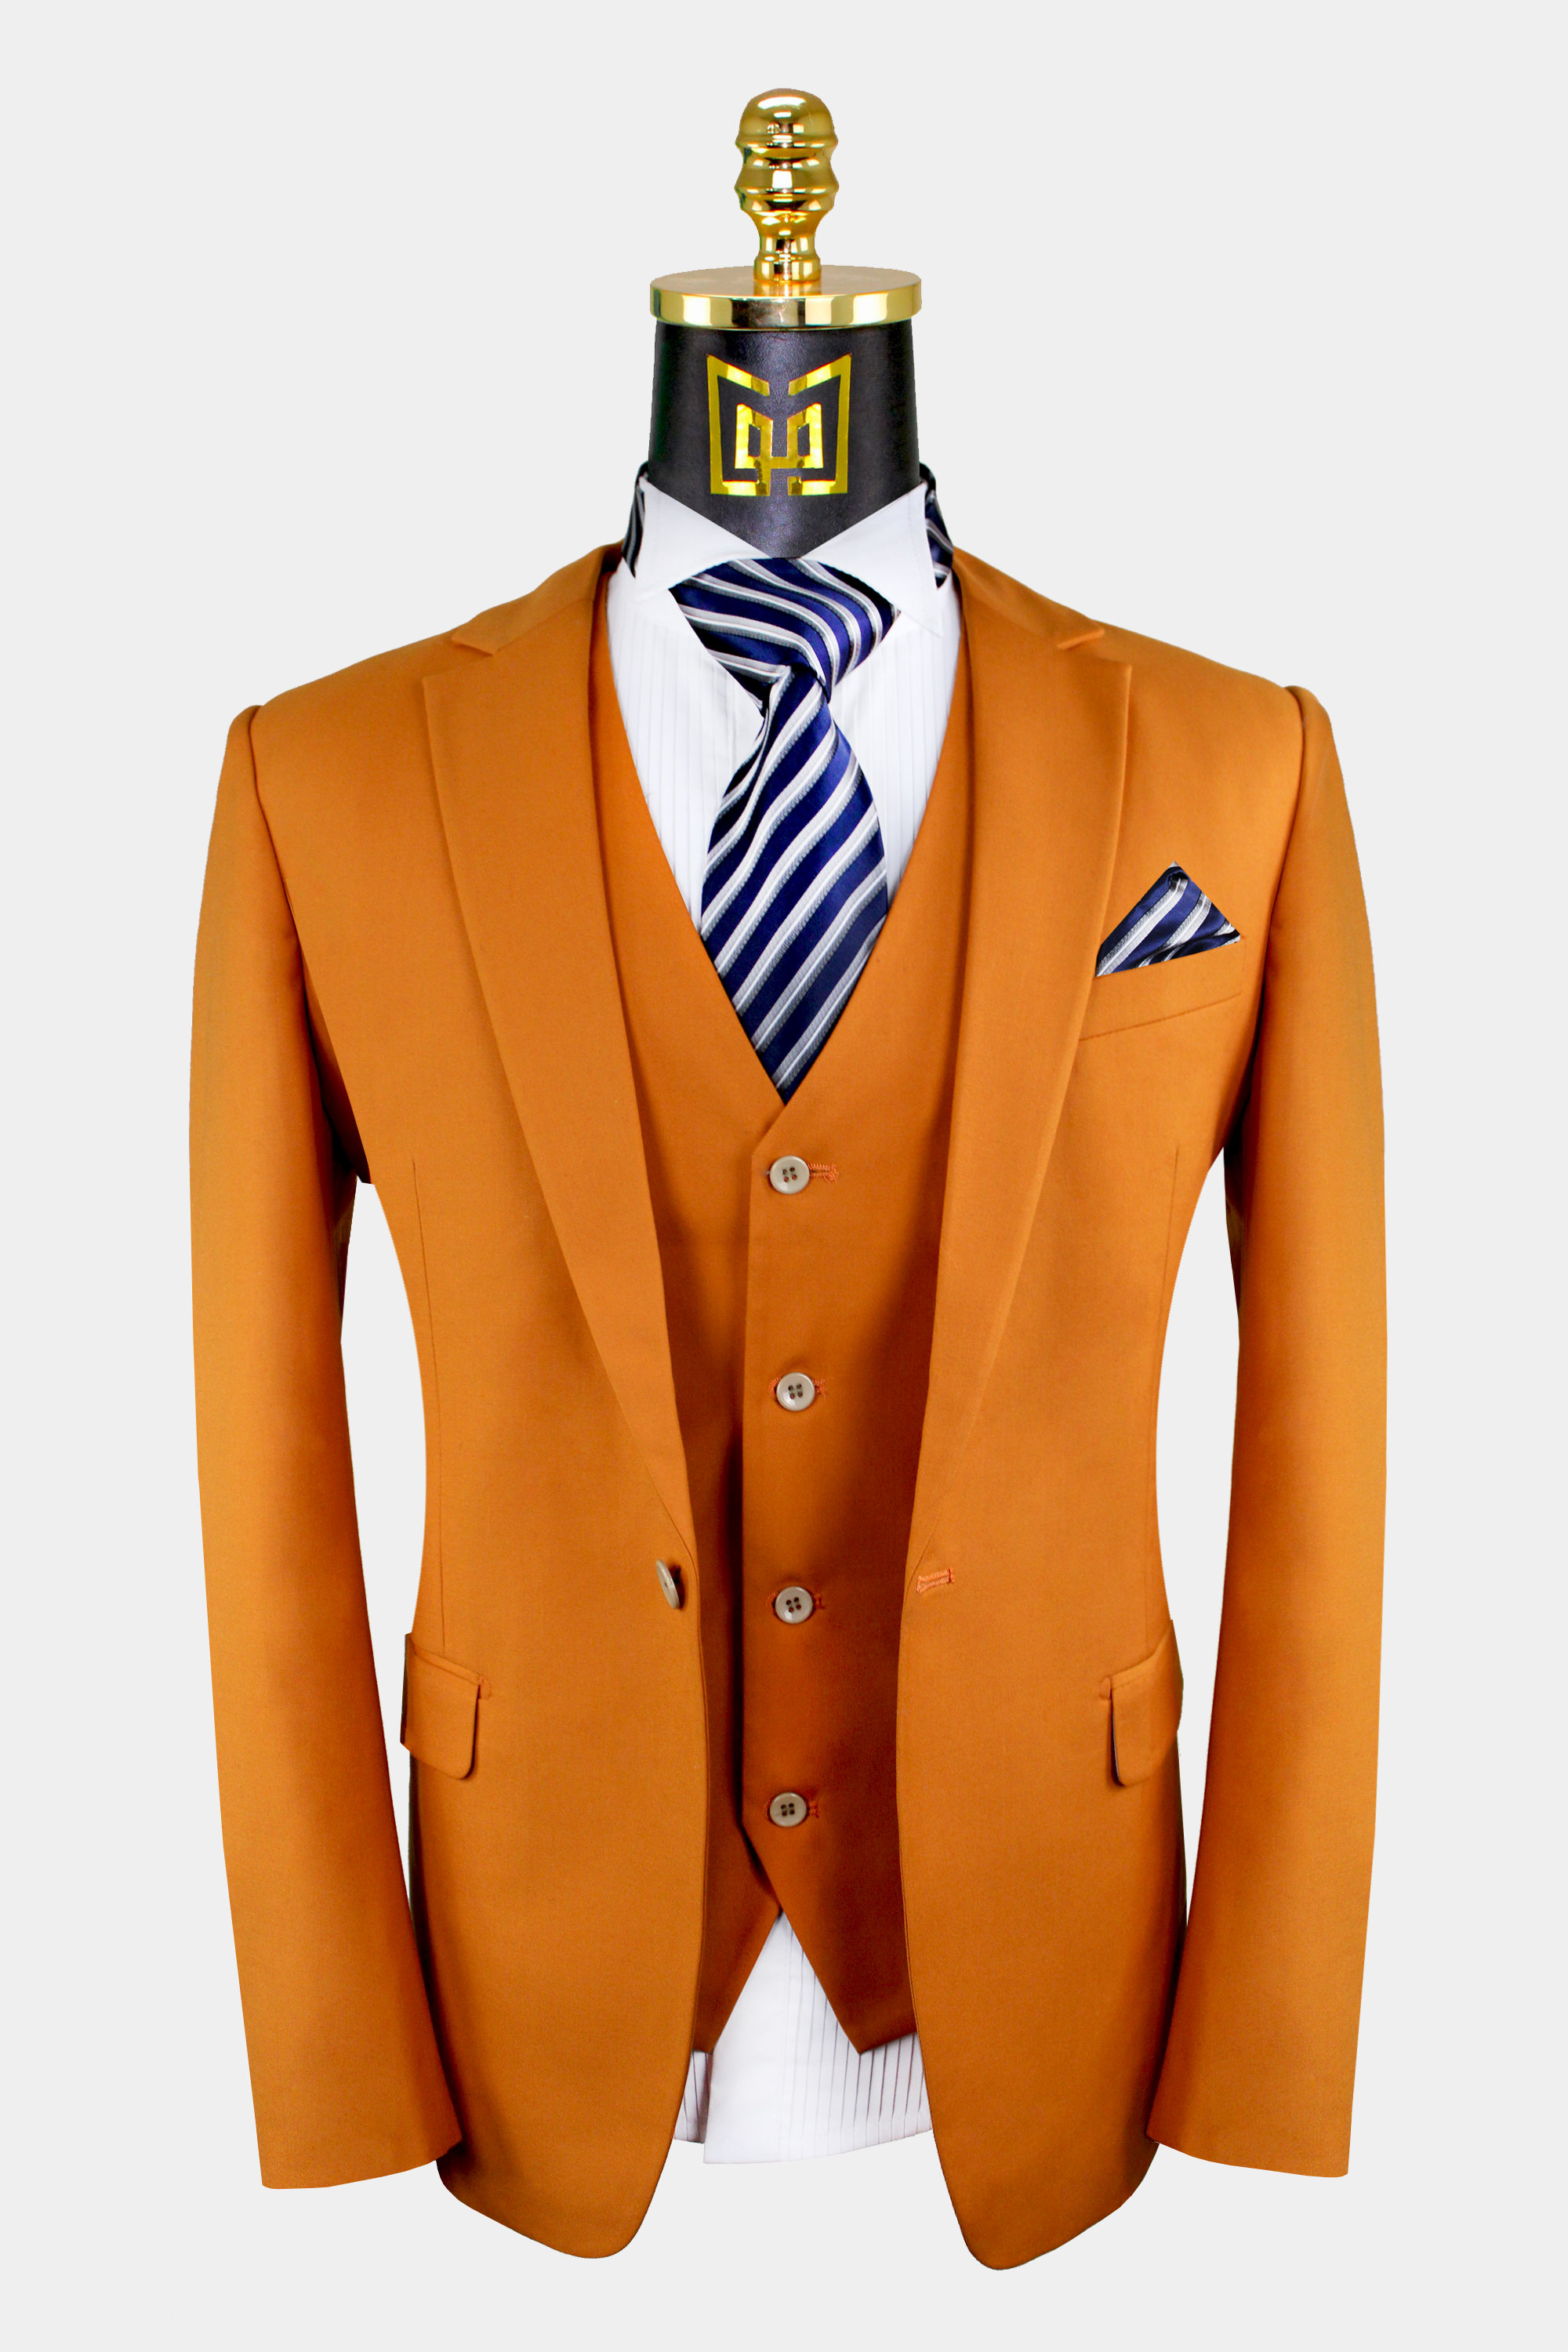 Burnt-Orange-Suit)Vest-from-Gentlemansguru.com